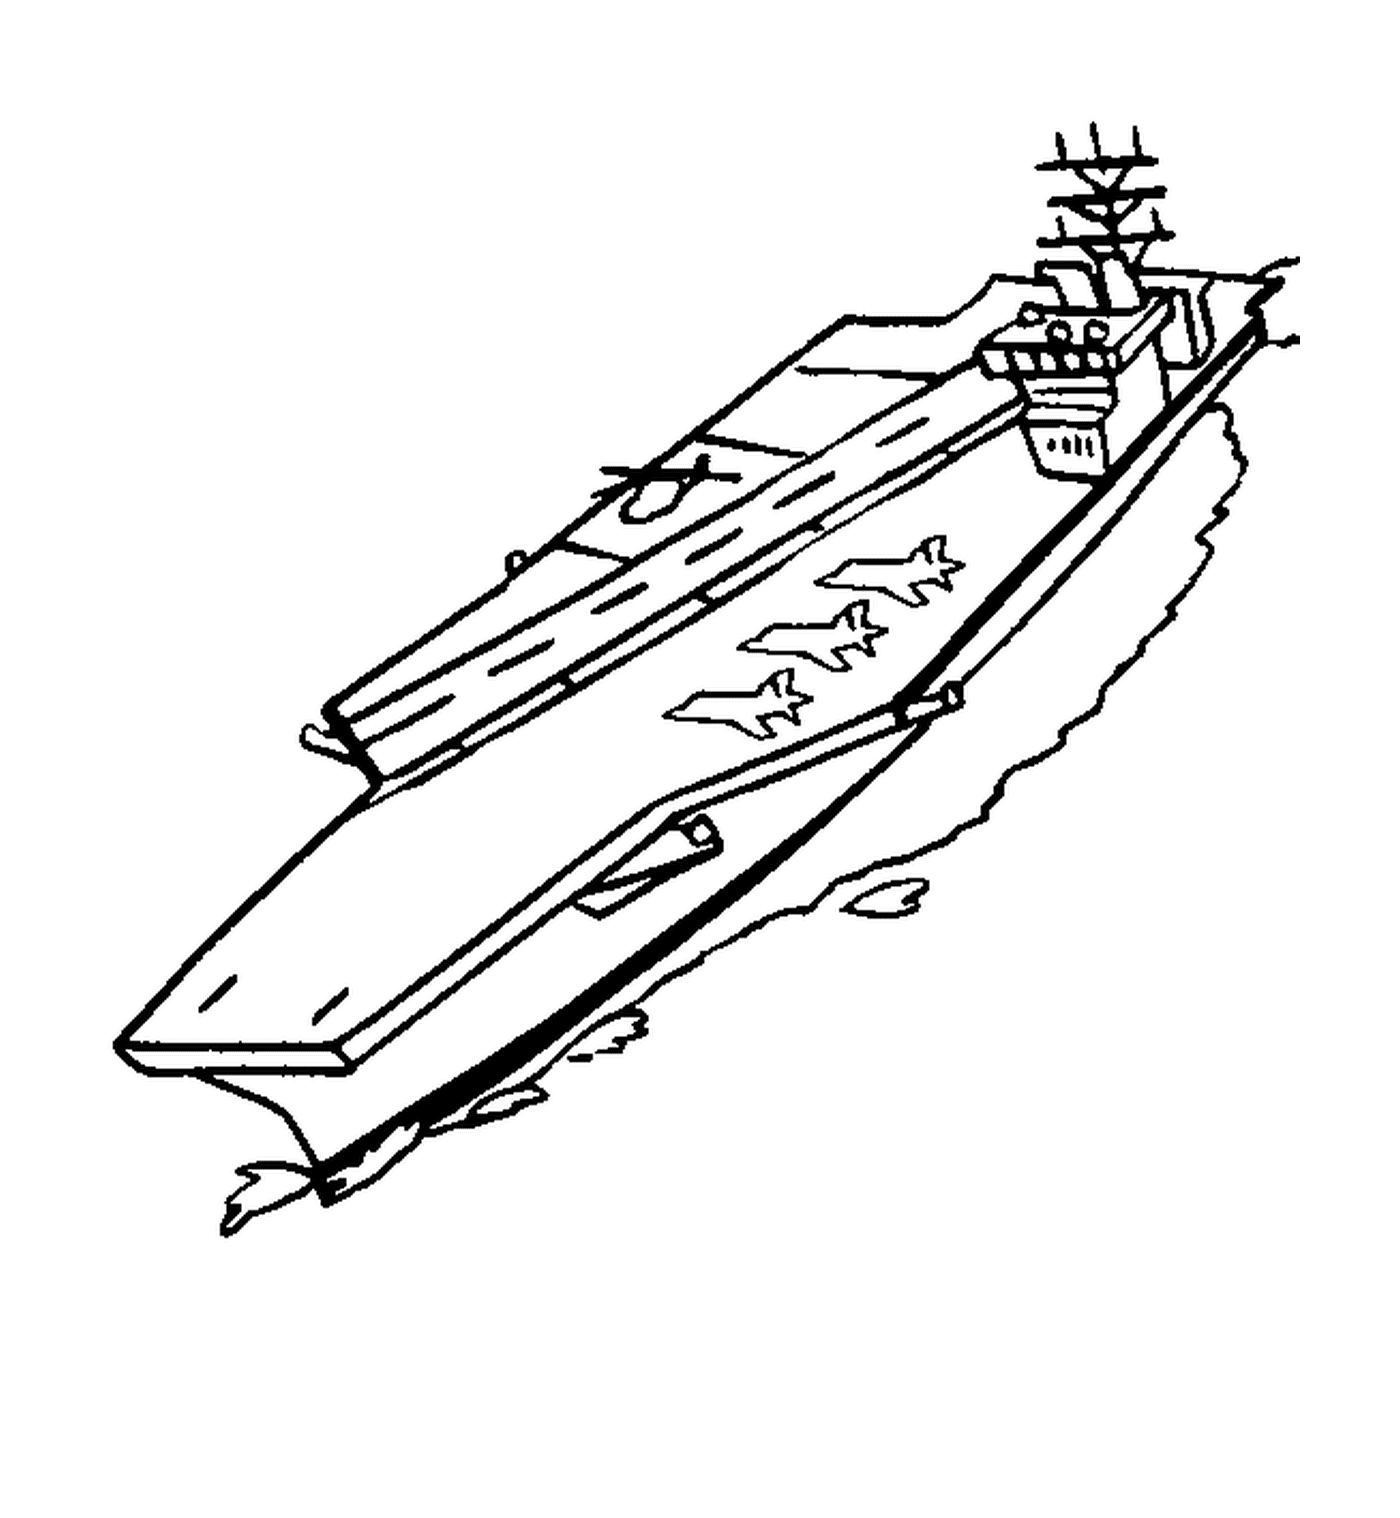  Um barco 